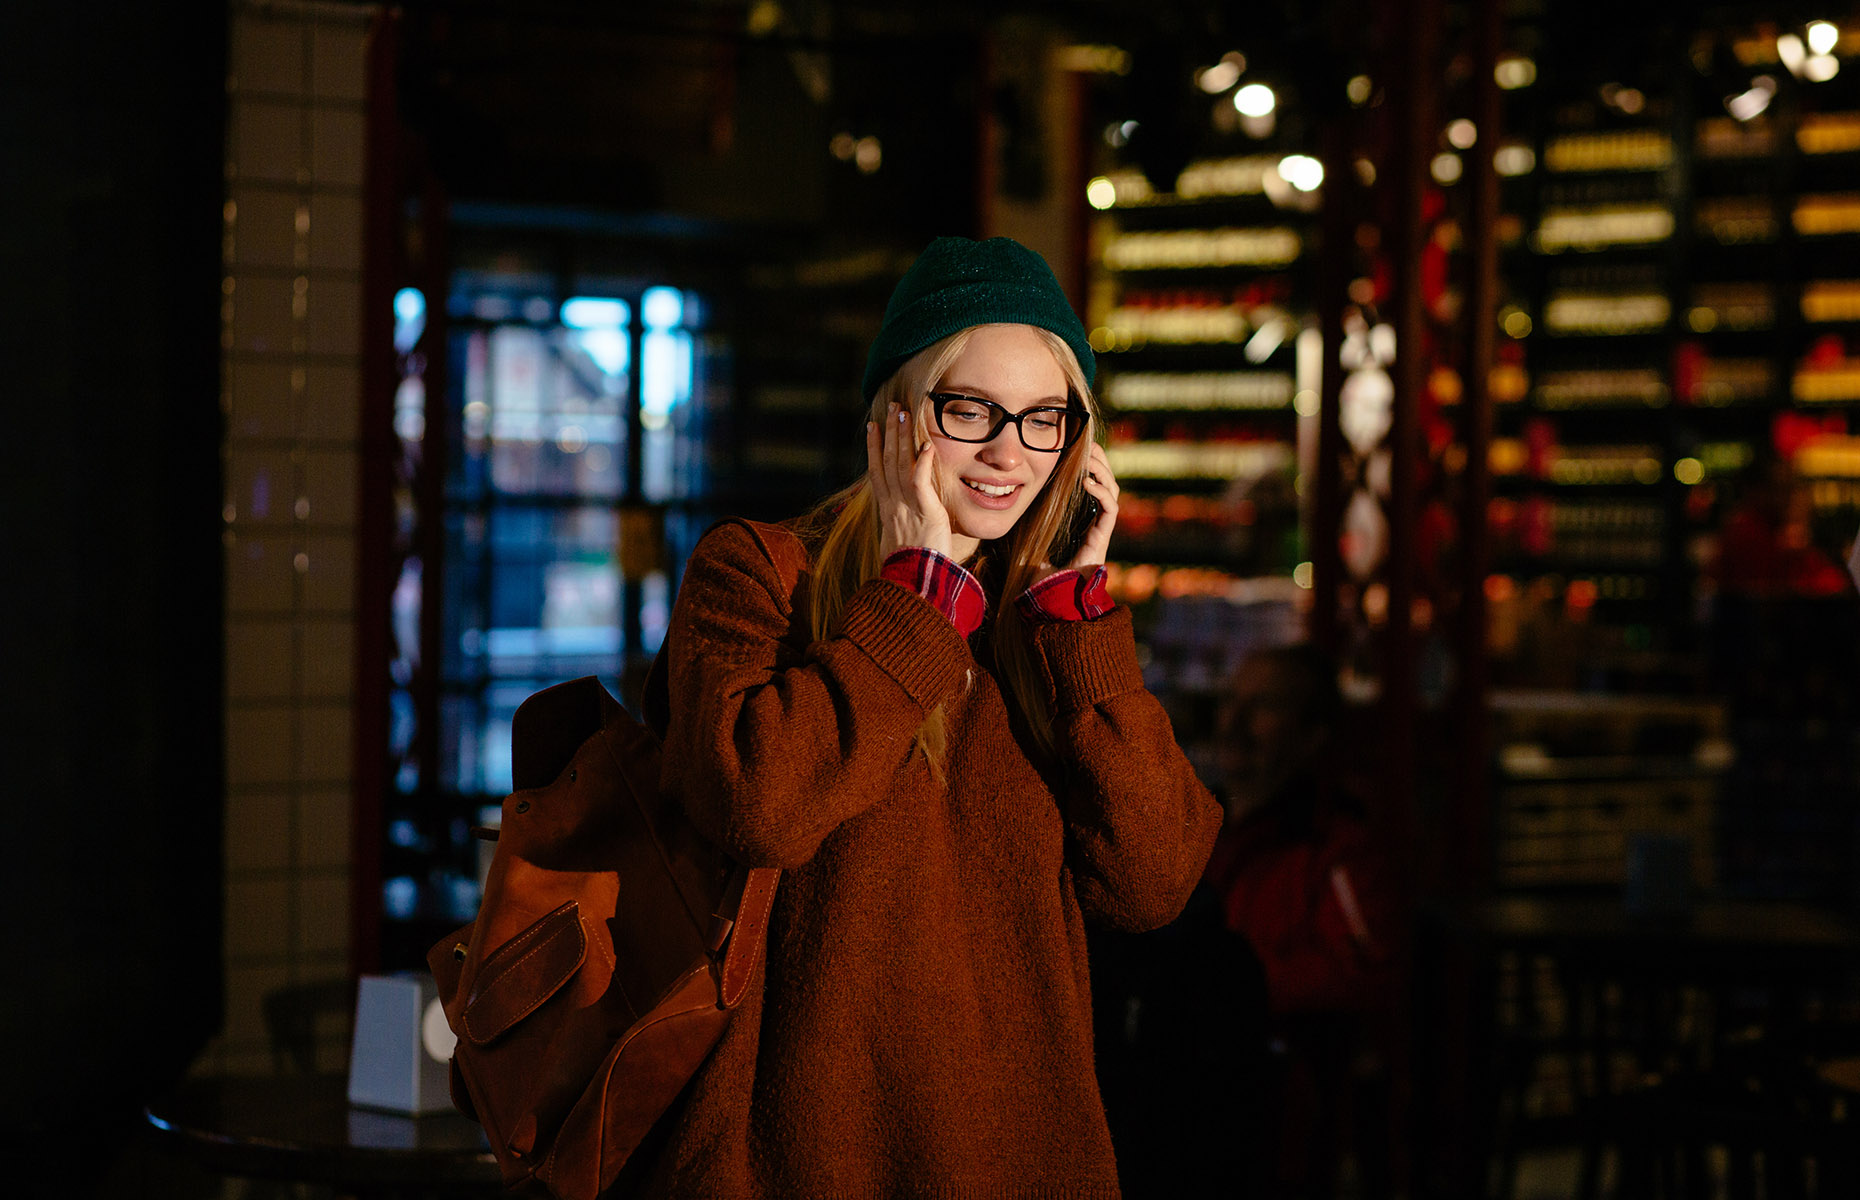 Girl on phone in a bar (Image: Iryna Inshyna/Shutterstock)